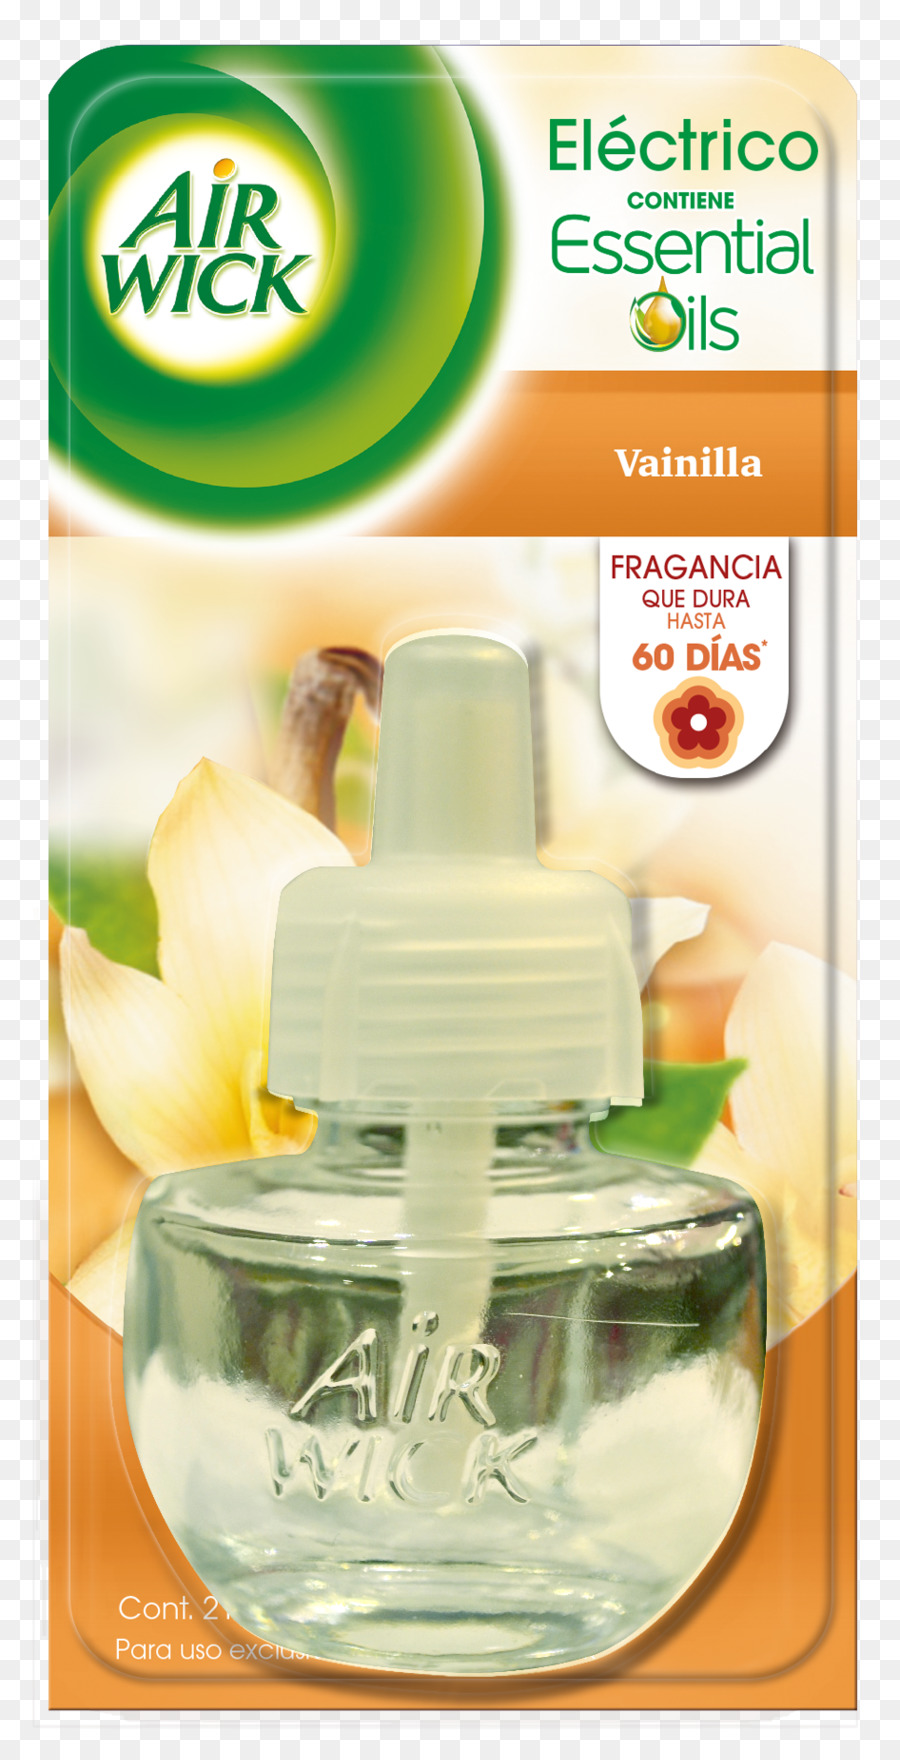 Deodoranti per ambienti Air wick olio di fragranza solo dispositivo Desodorante ambiental Air Wick - Aromatitzant